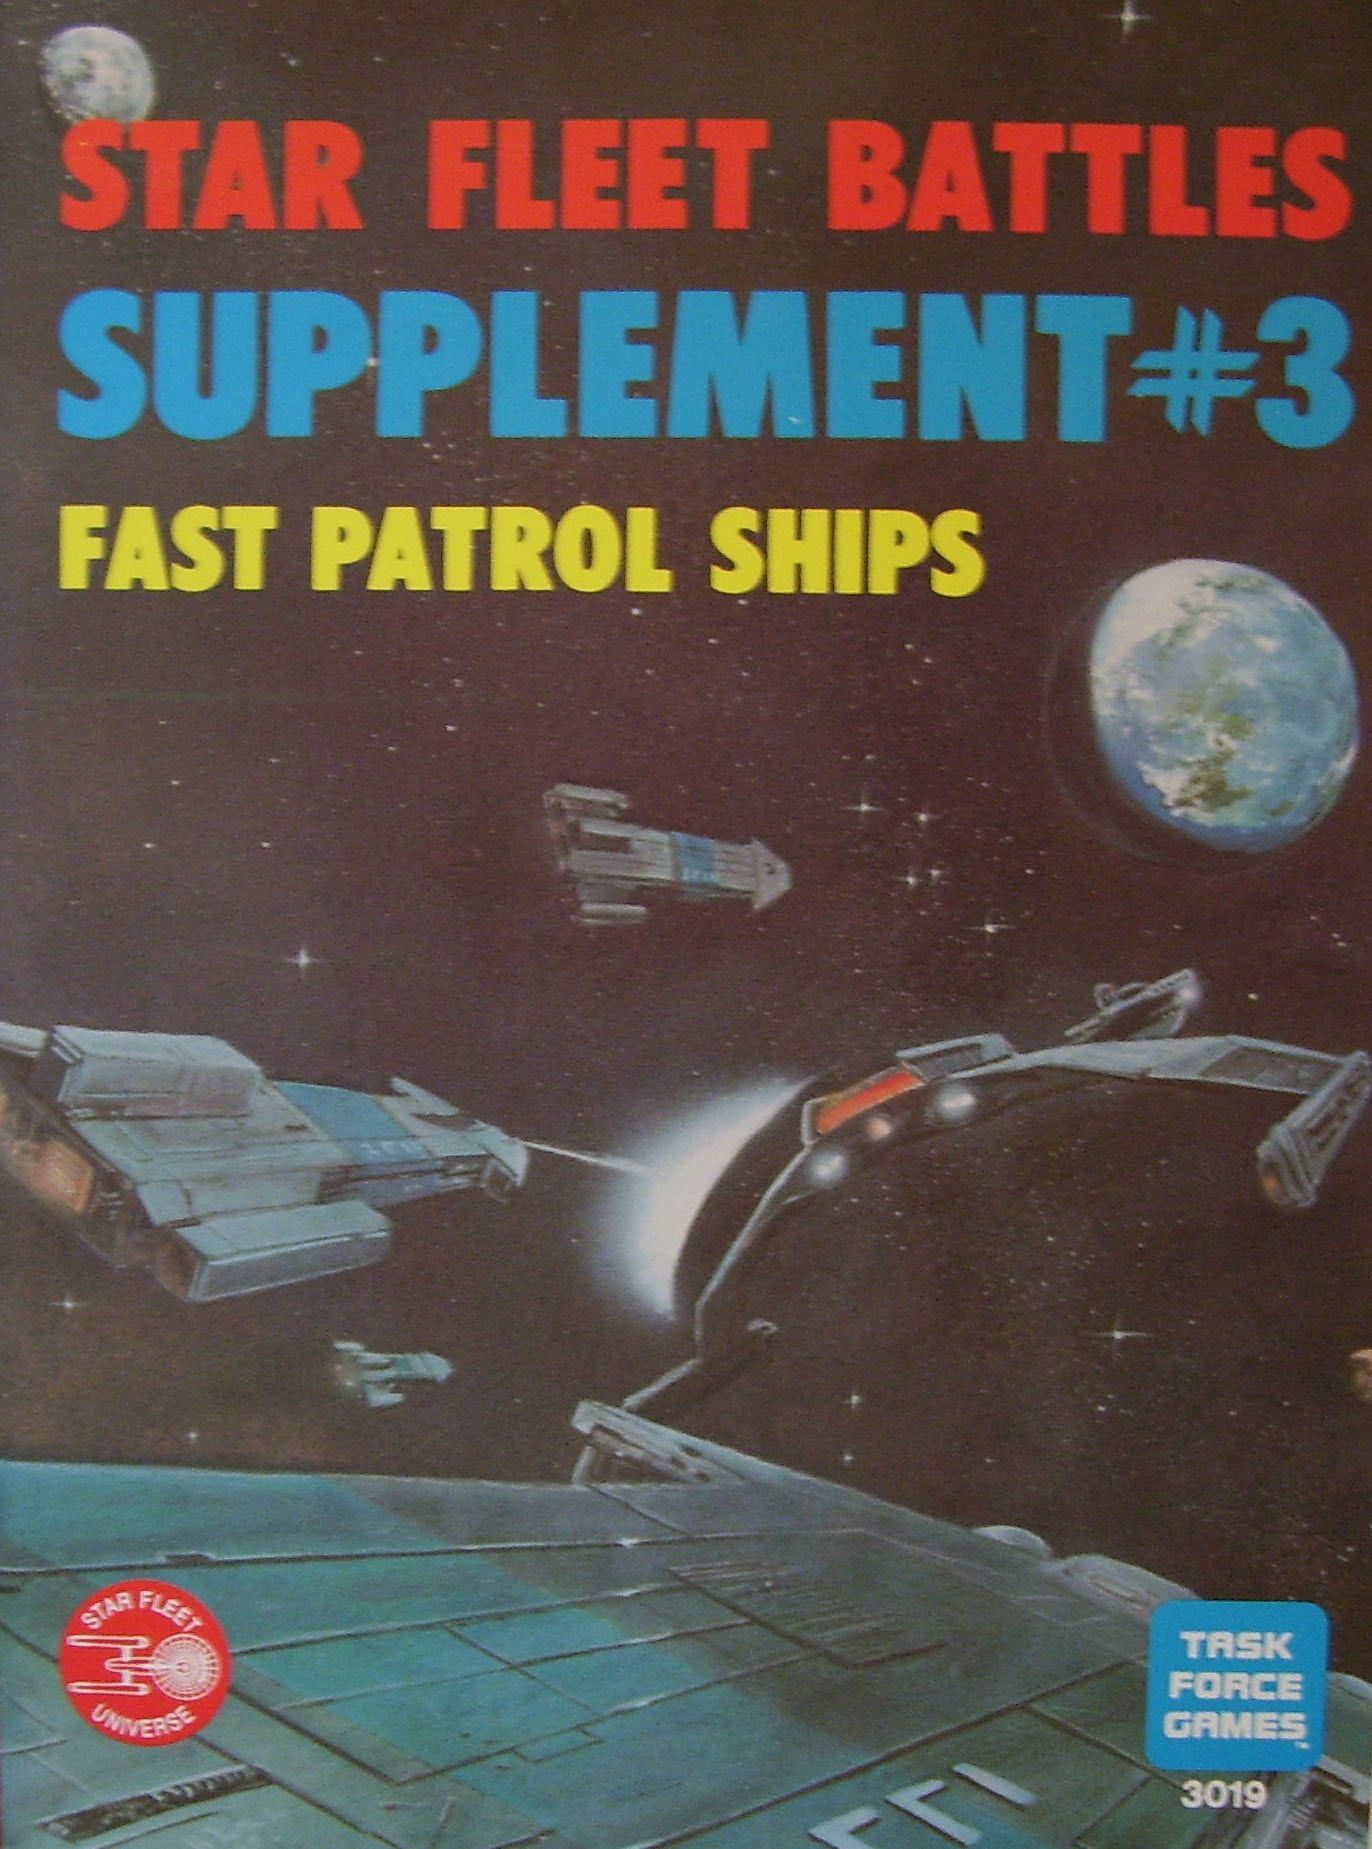 Star Fleet Battles Supplement #3: Fast Patrol Ships